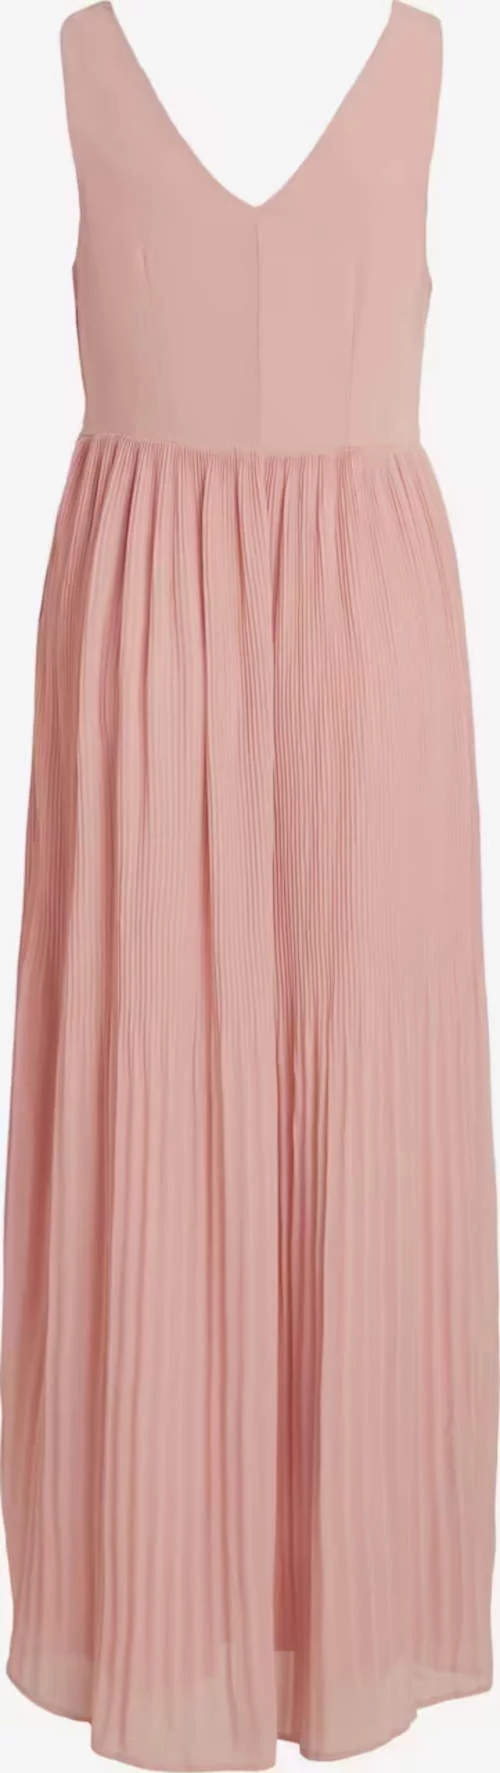 Hosszú rózsaszín ruha koszorúslánynak